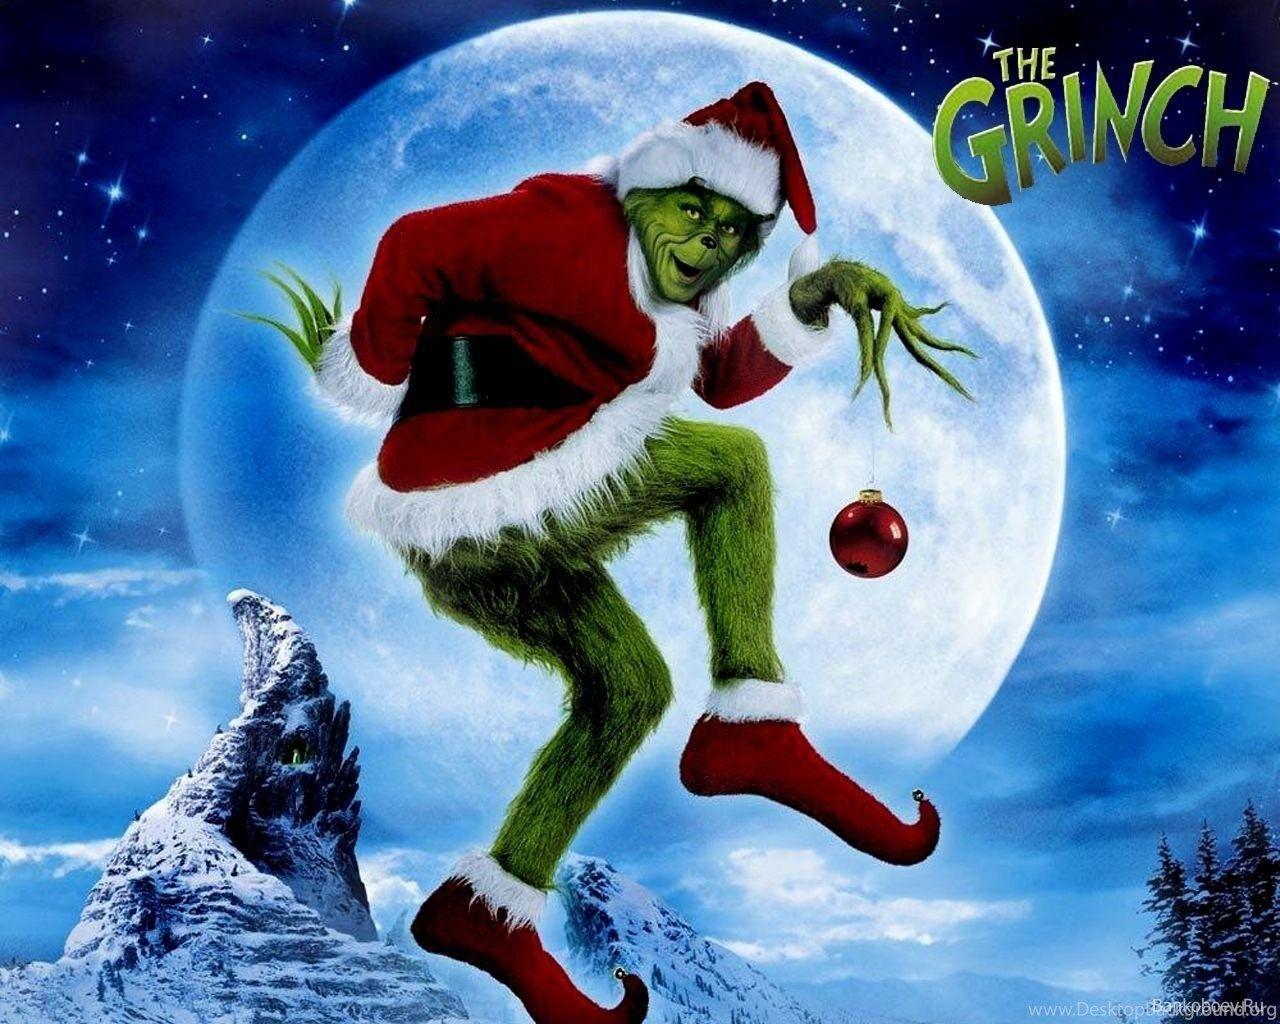 Lựa chọn tuyệt vời cho những ai yêu thích nhân vật Grinch! Bộ sưu tập hình nền Grinch đầy màu sắc và sáng tạo sẽ khiến bạn bừng sáng cả trong mùa lễ hội đầy niềm vui và cả giai đoạn còn lại của năm. Thưởng thức những hình ảnh độc đáo của Grinch và tràn đầy niềm vui vào dịp Giáng sinh.